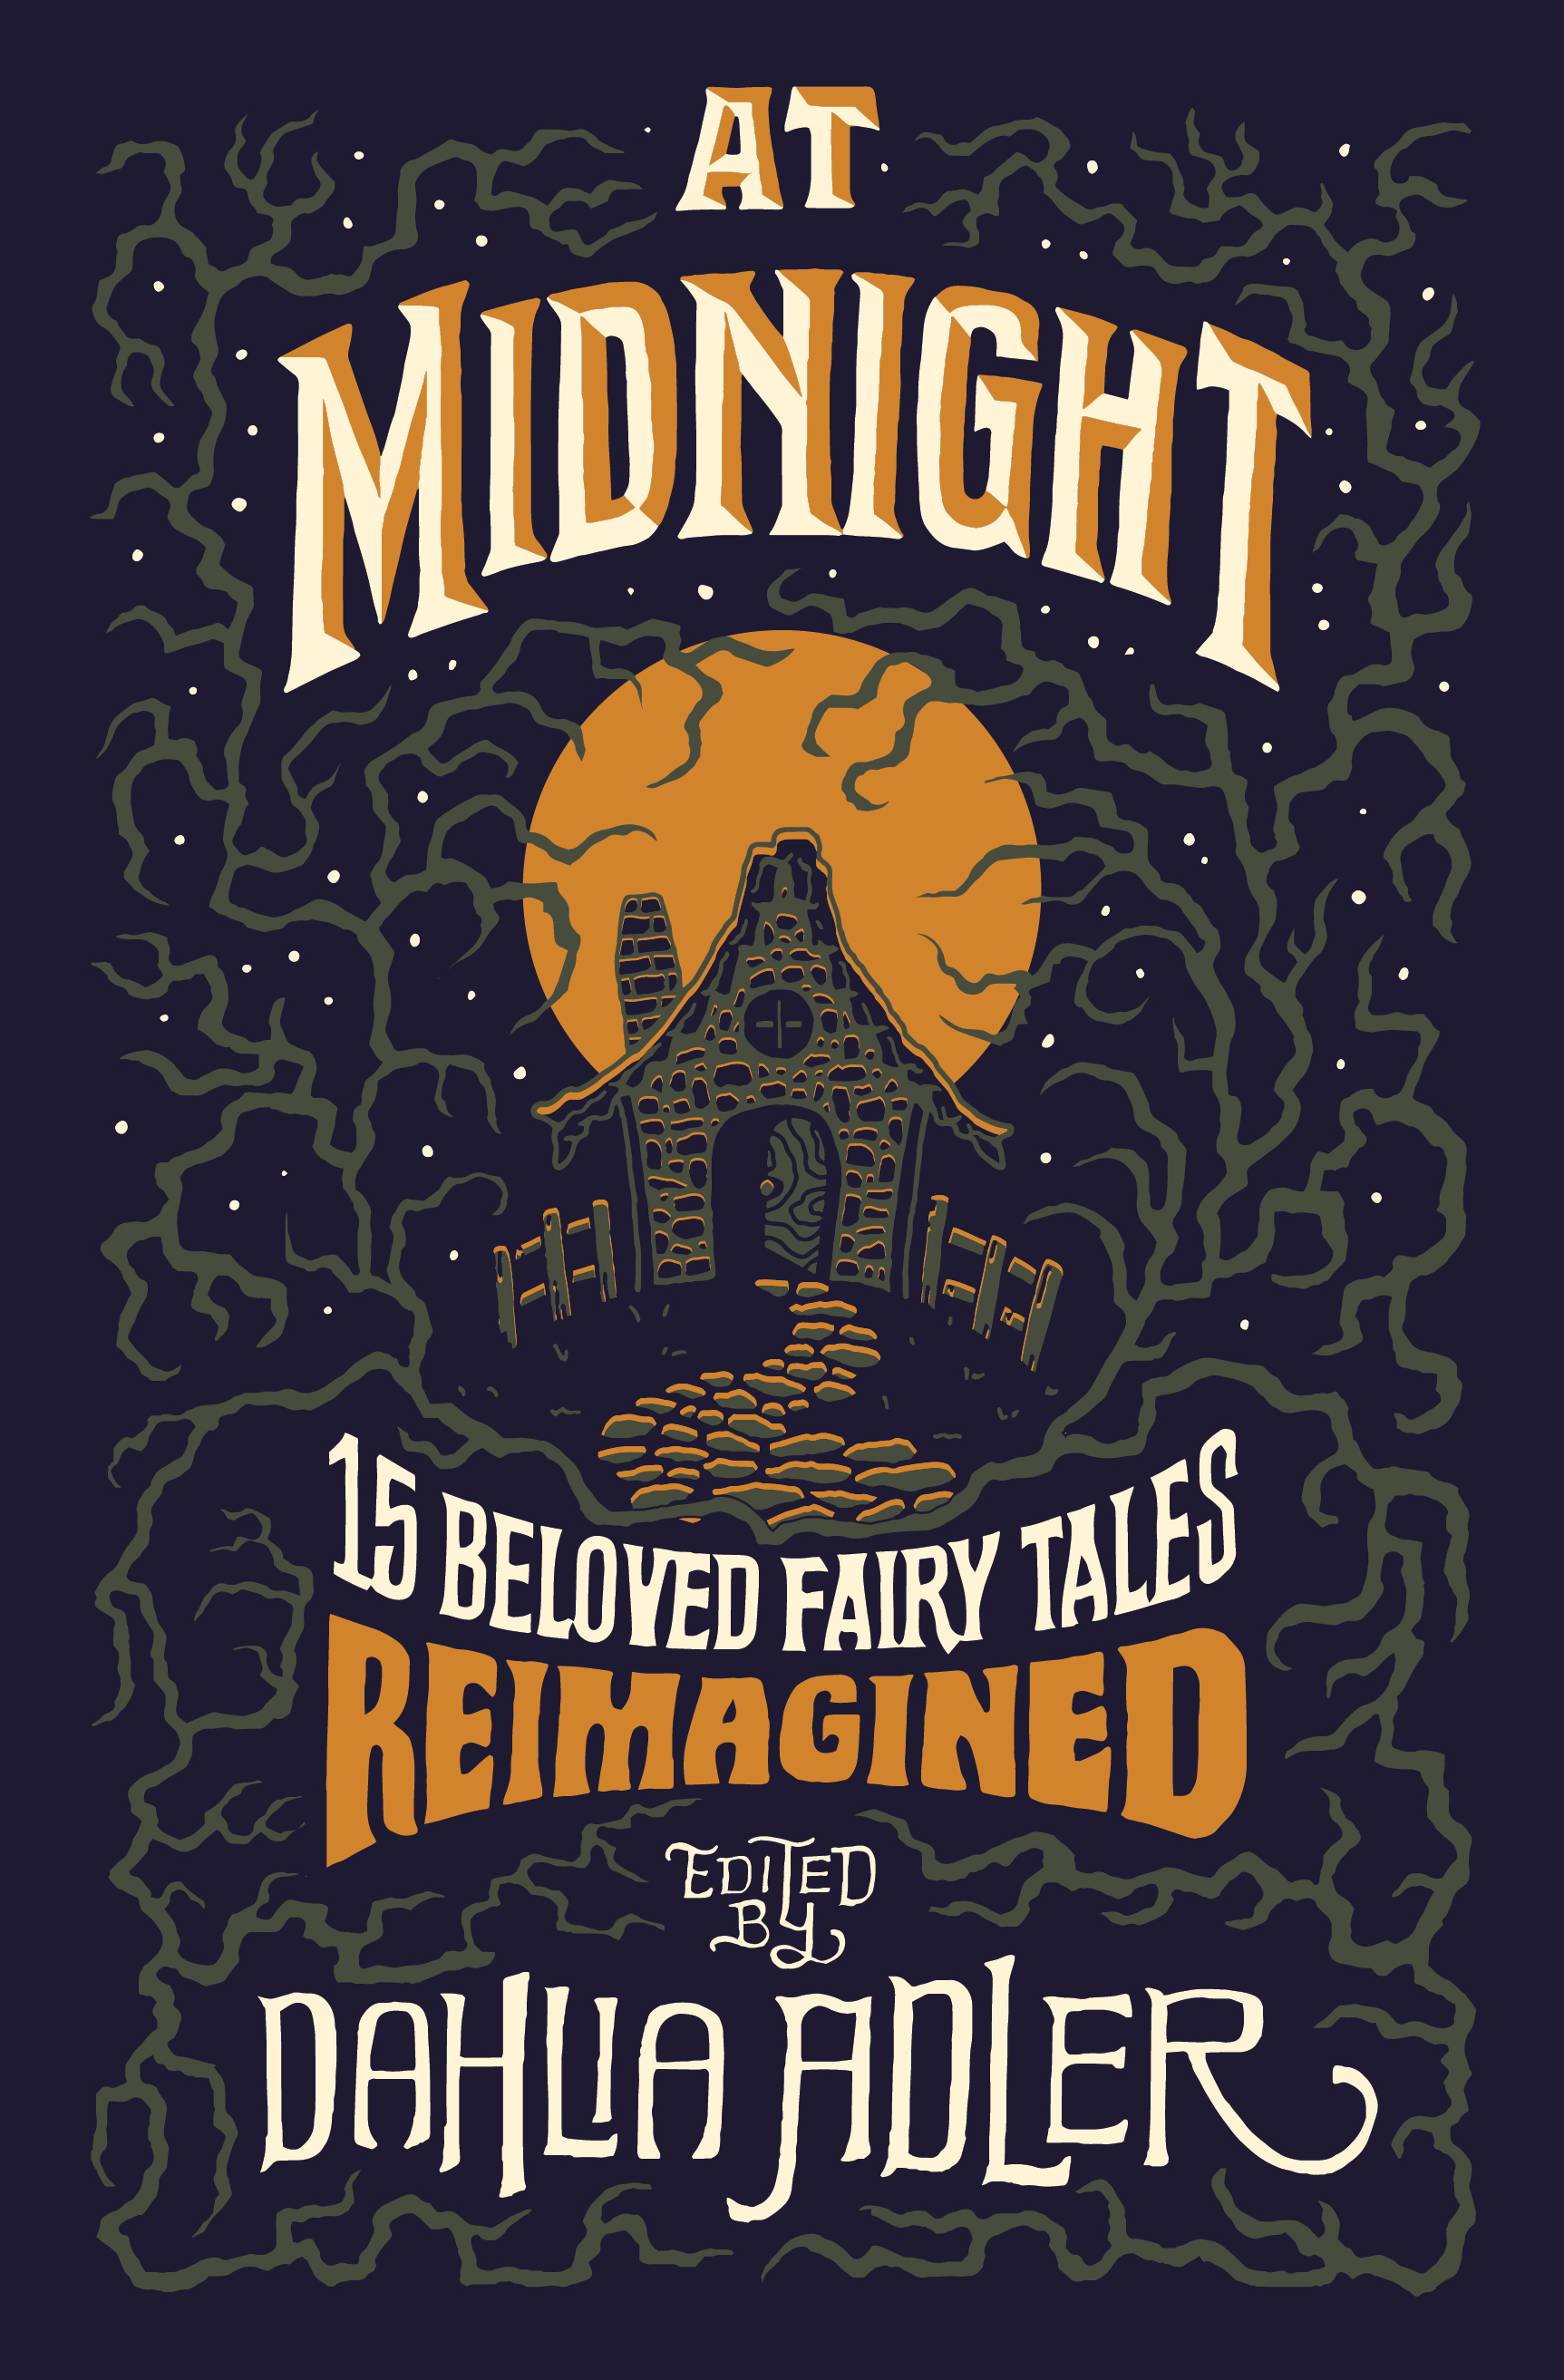 At Midnight ed. by Dahlia Adler